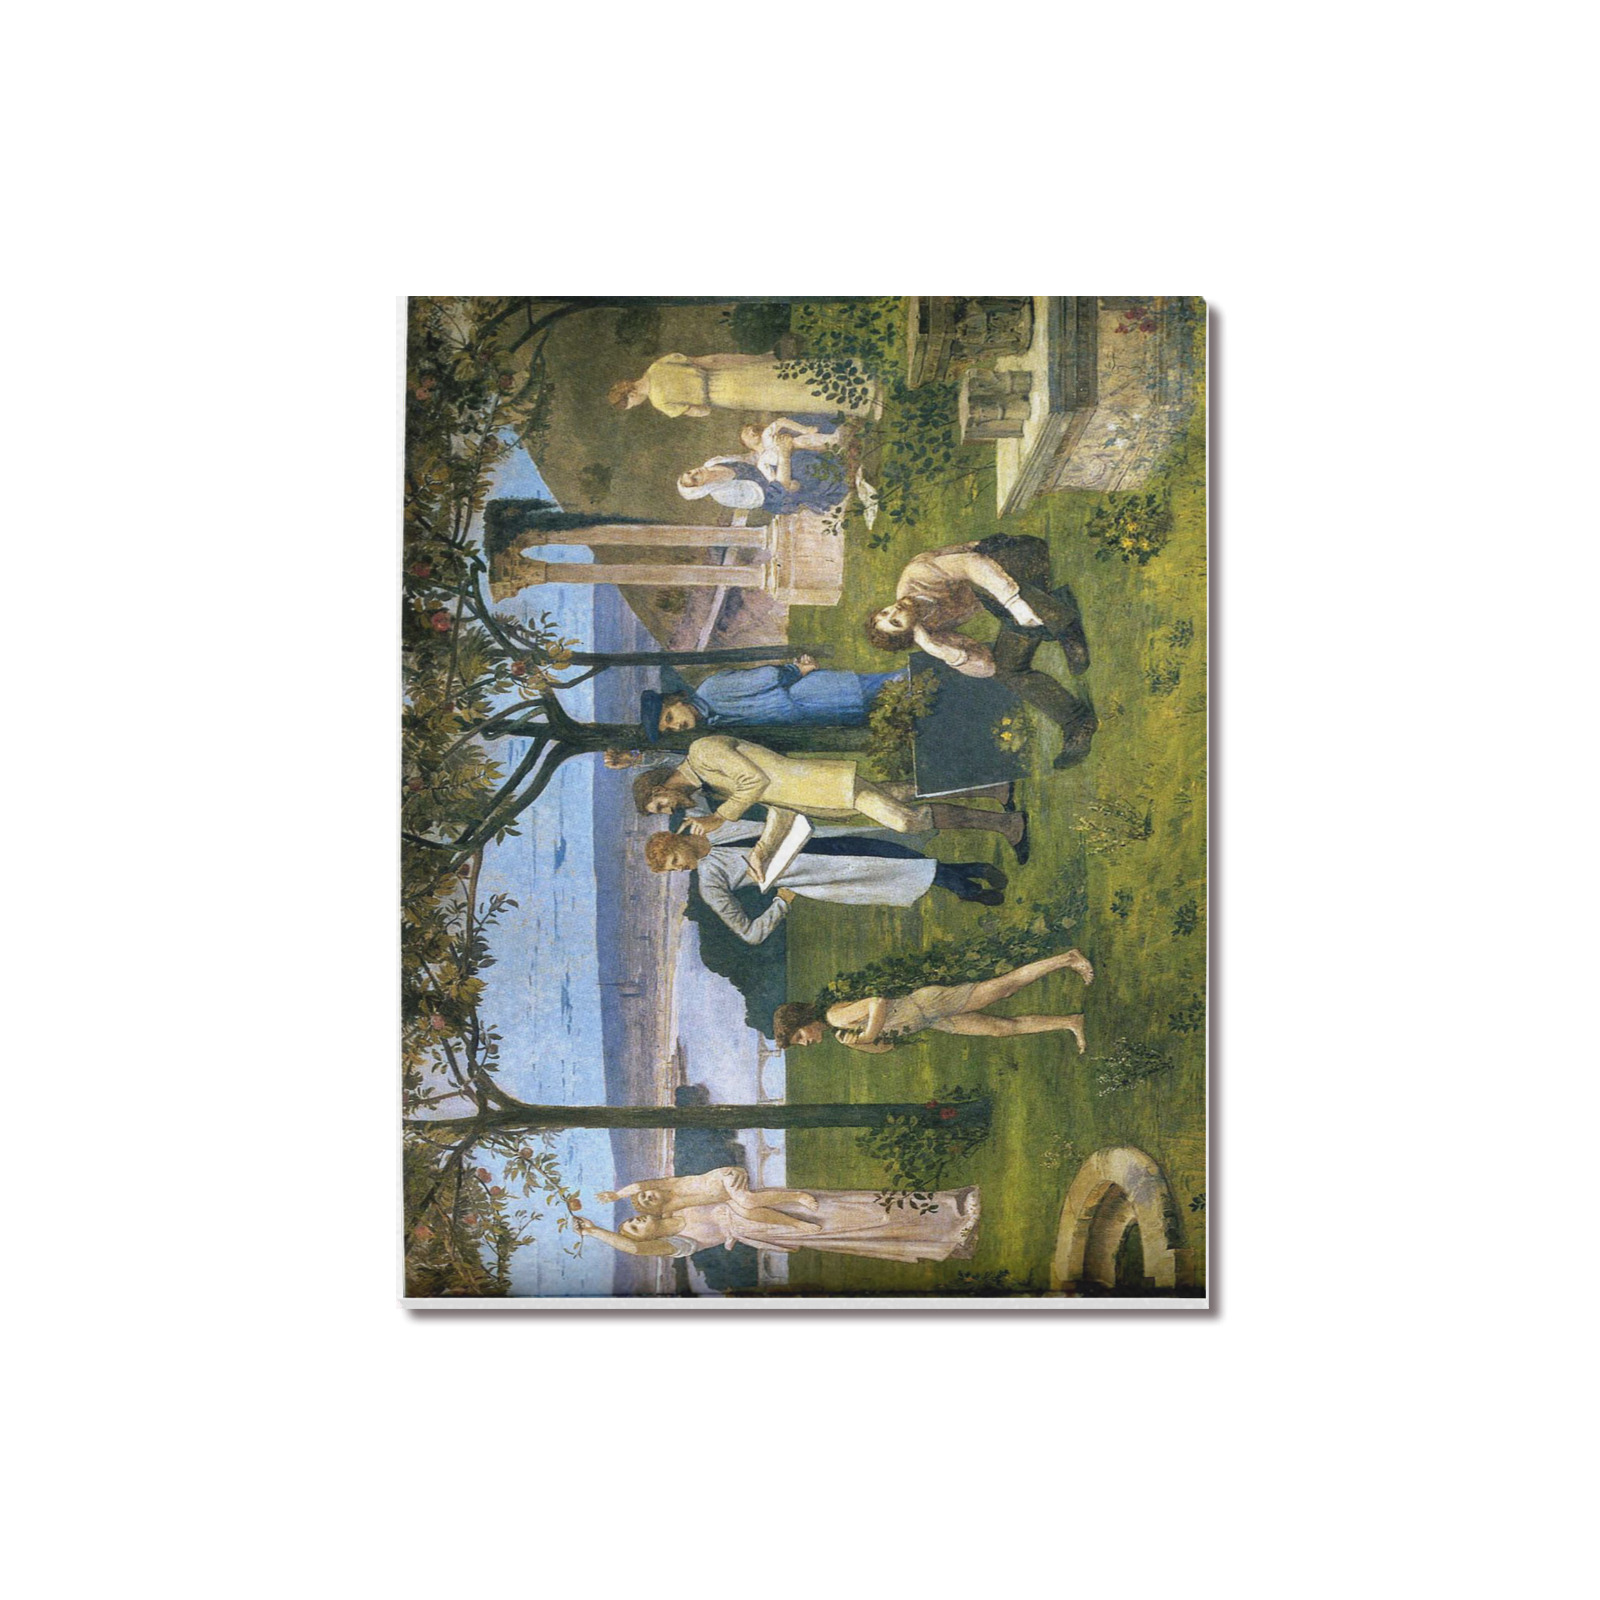 Chavannes between art nature Upgraded Canvas Print 20"x16"